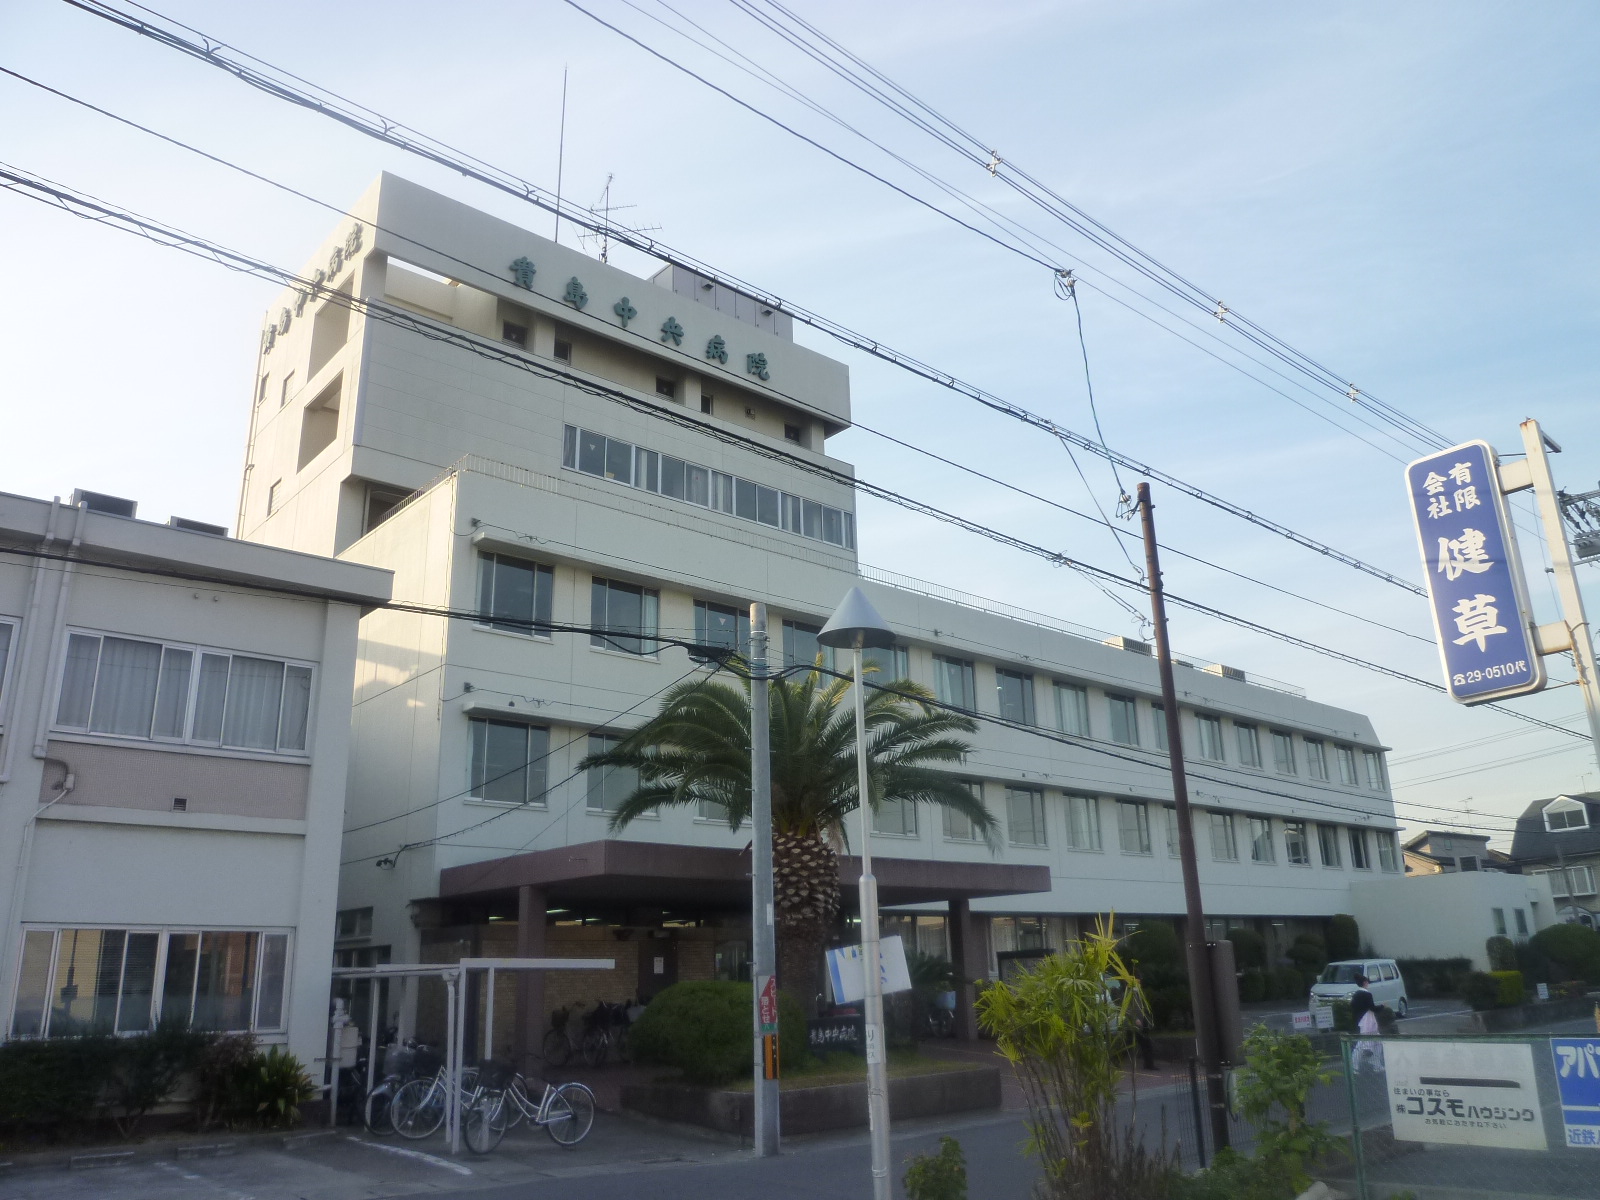 Hospital. 768m until the medical corporation Takashi Medical Association Kijima Central Hospital (Hospital)